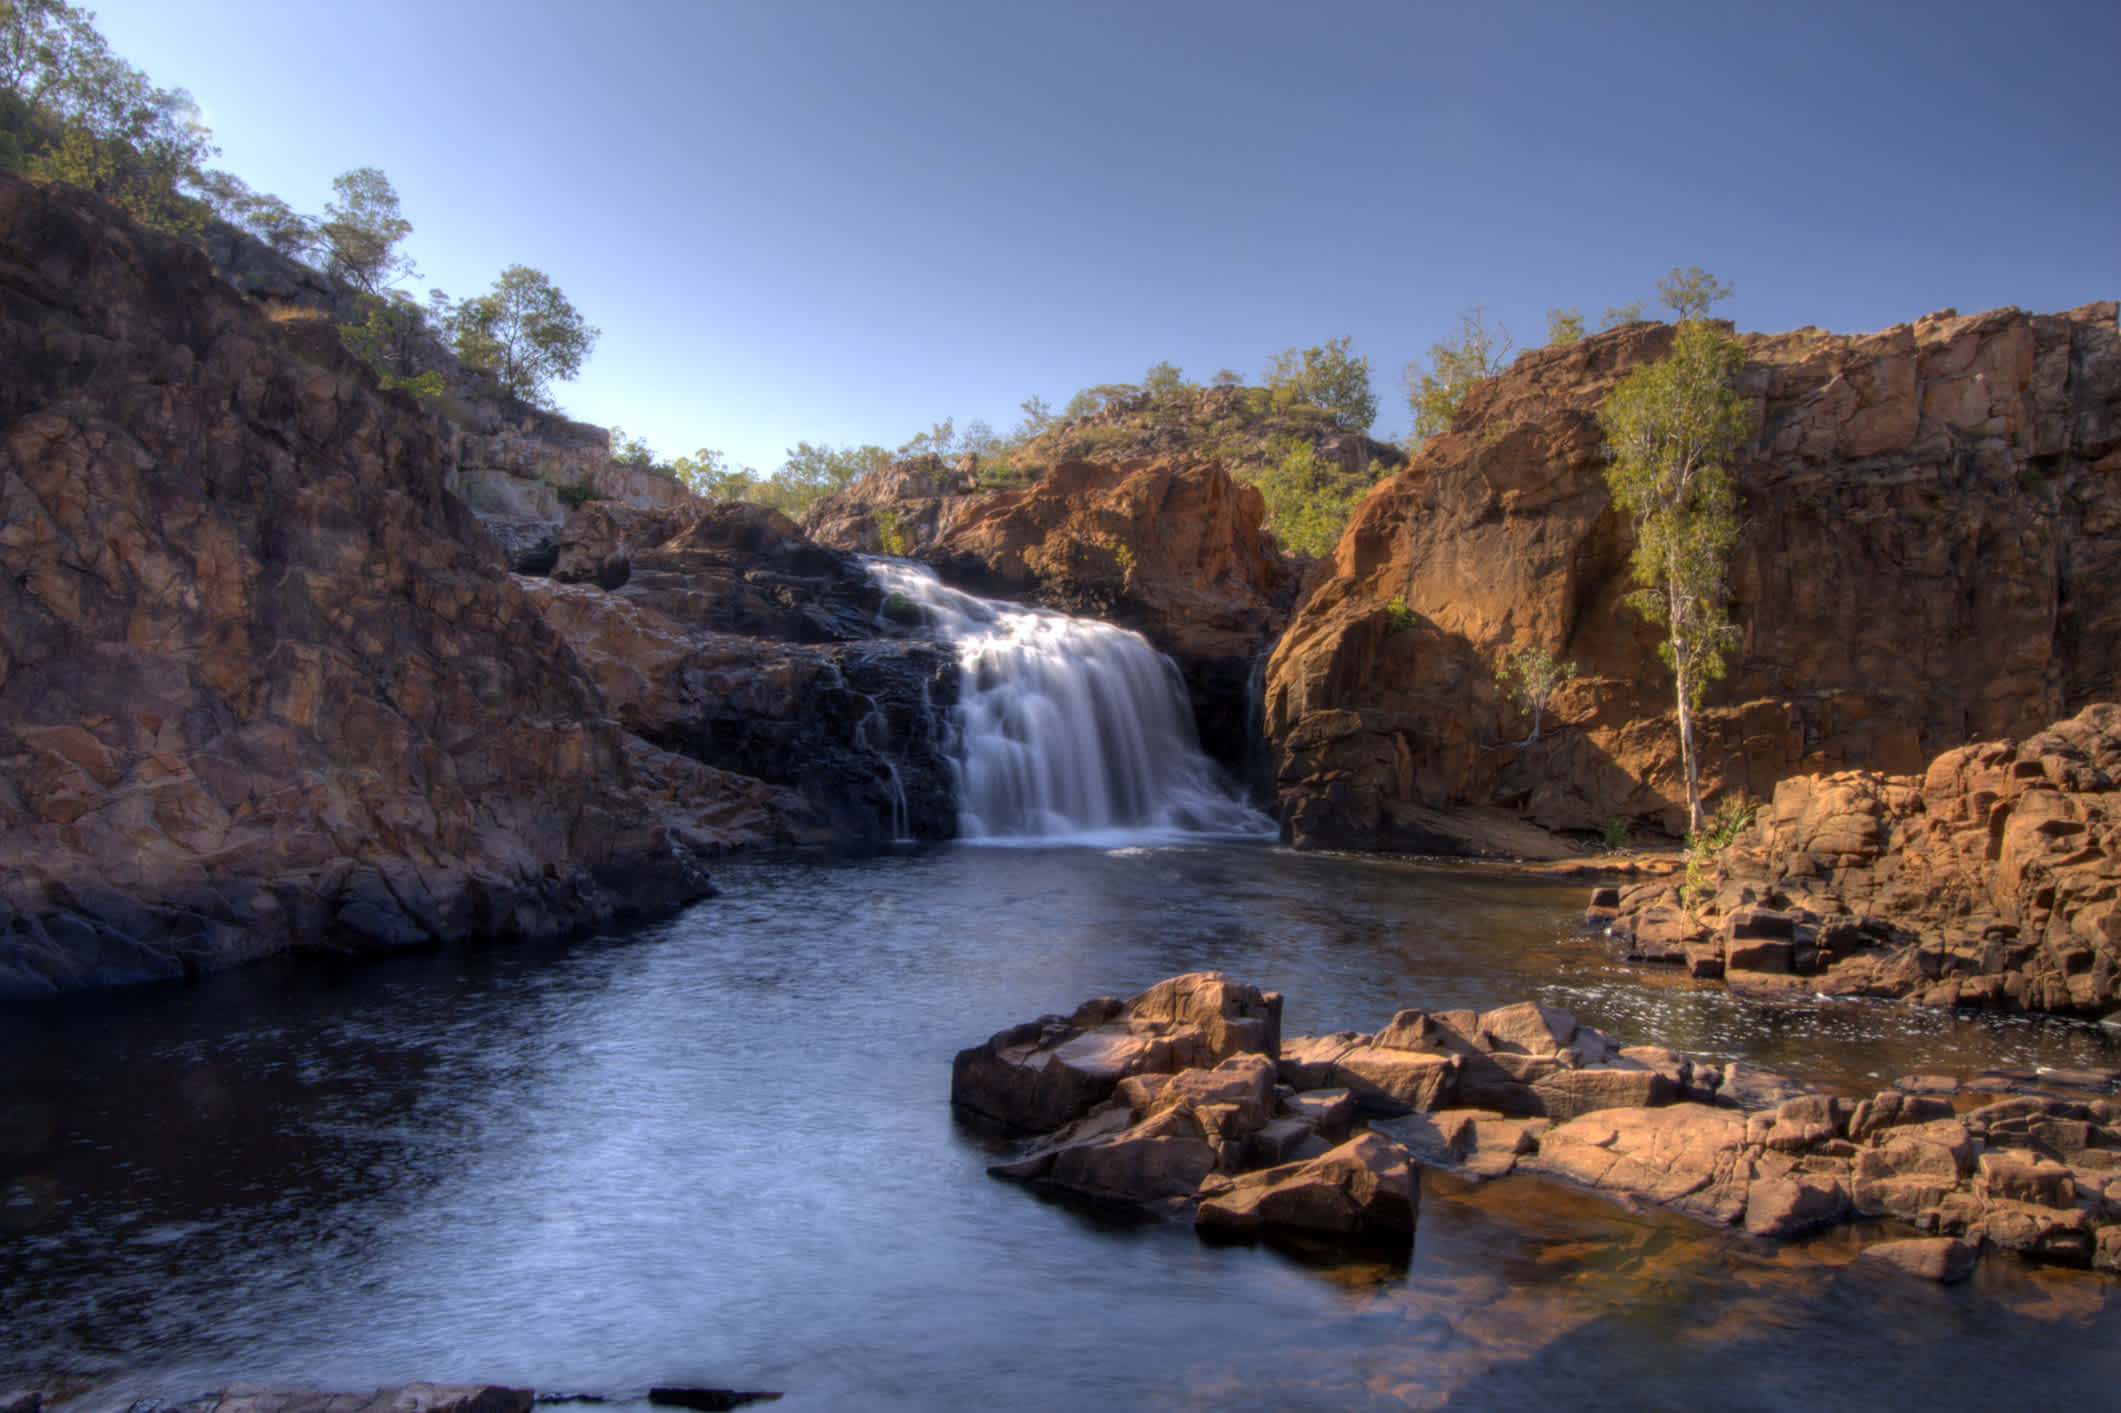 Les chutes Edith Falls dans le parc national australien de Nitmiluk, Territoire du Nord, Australie.

